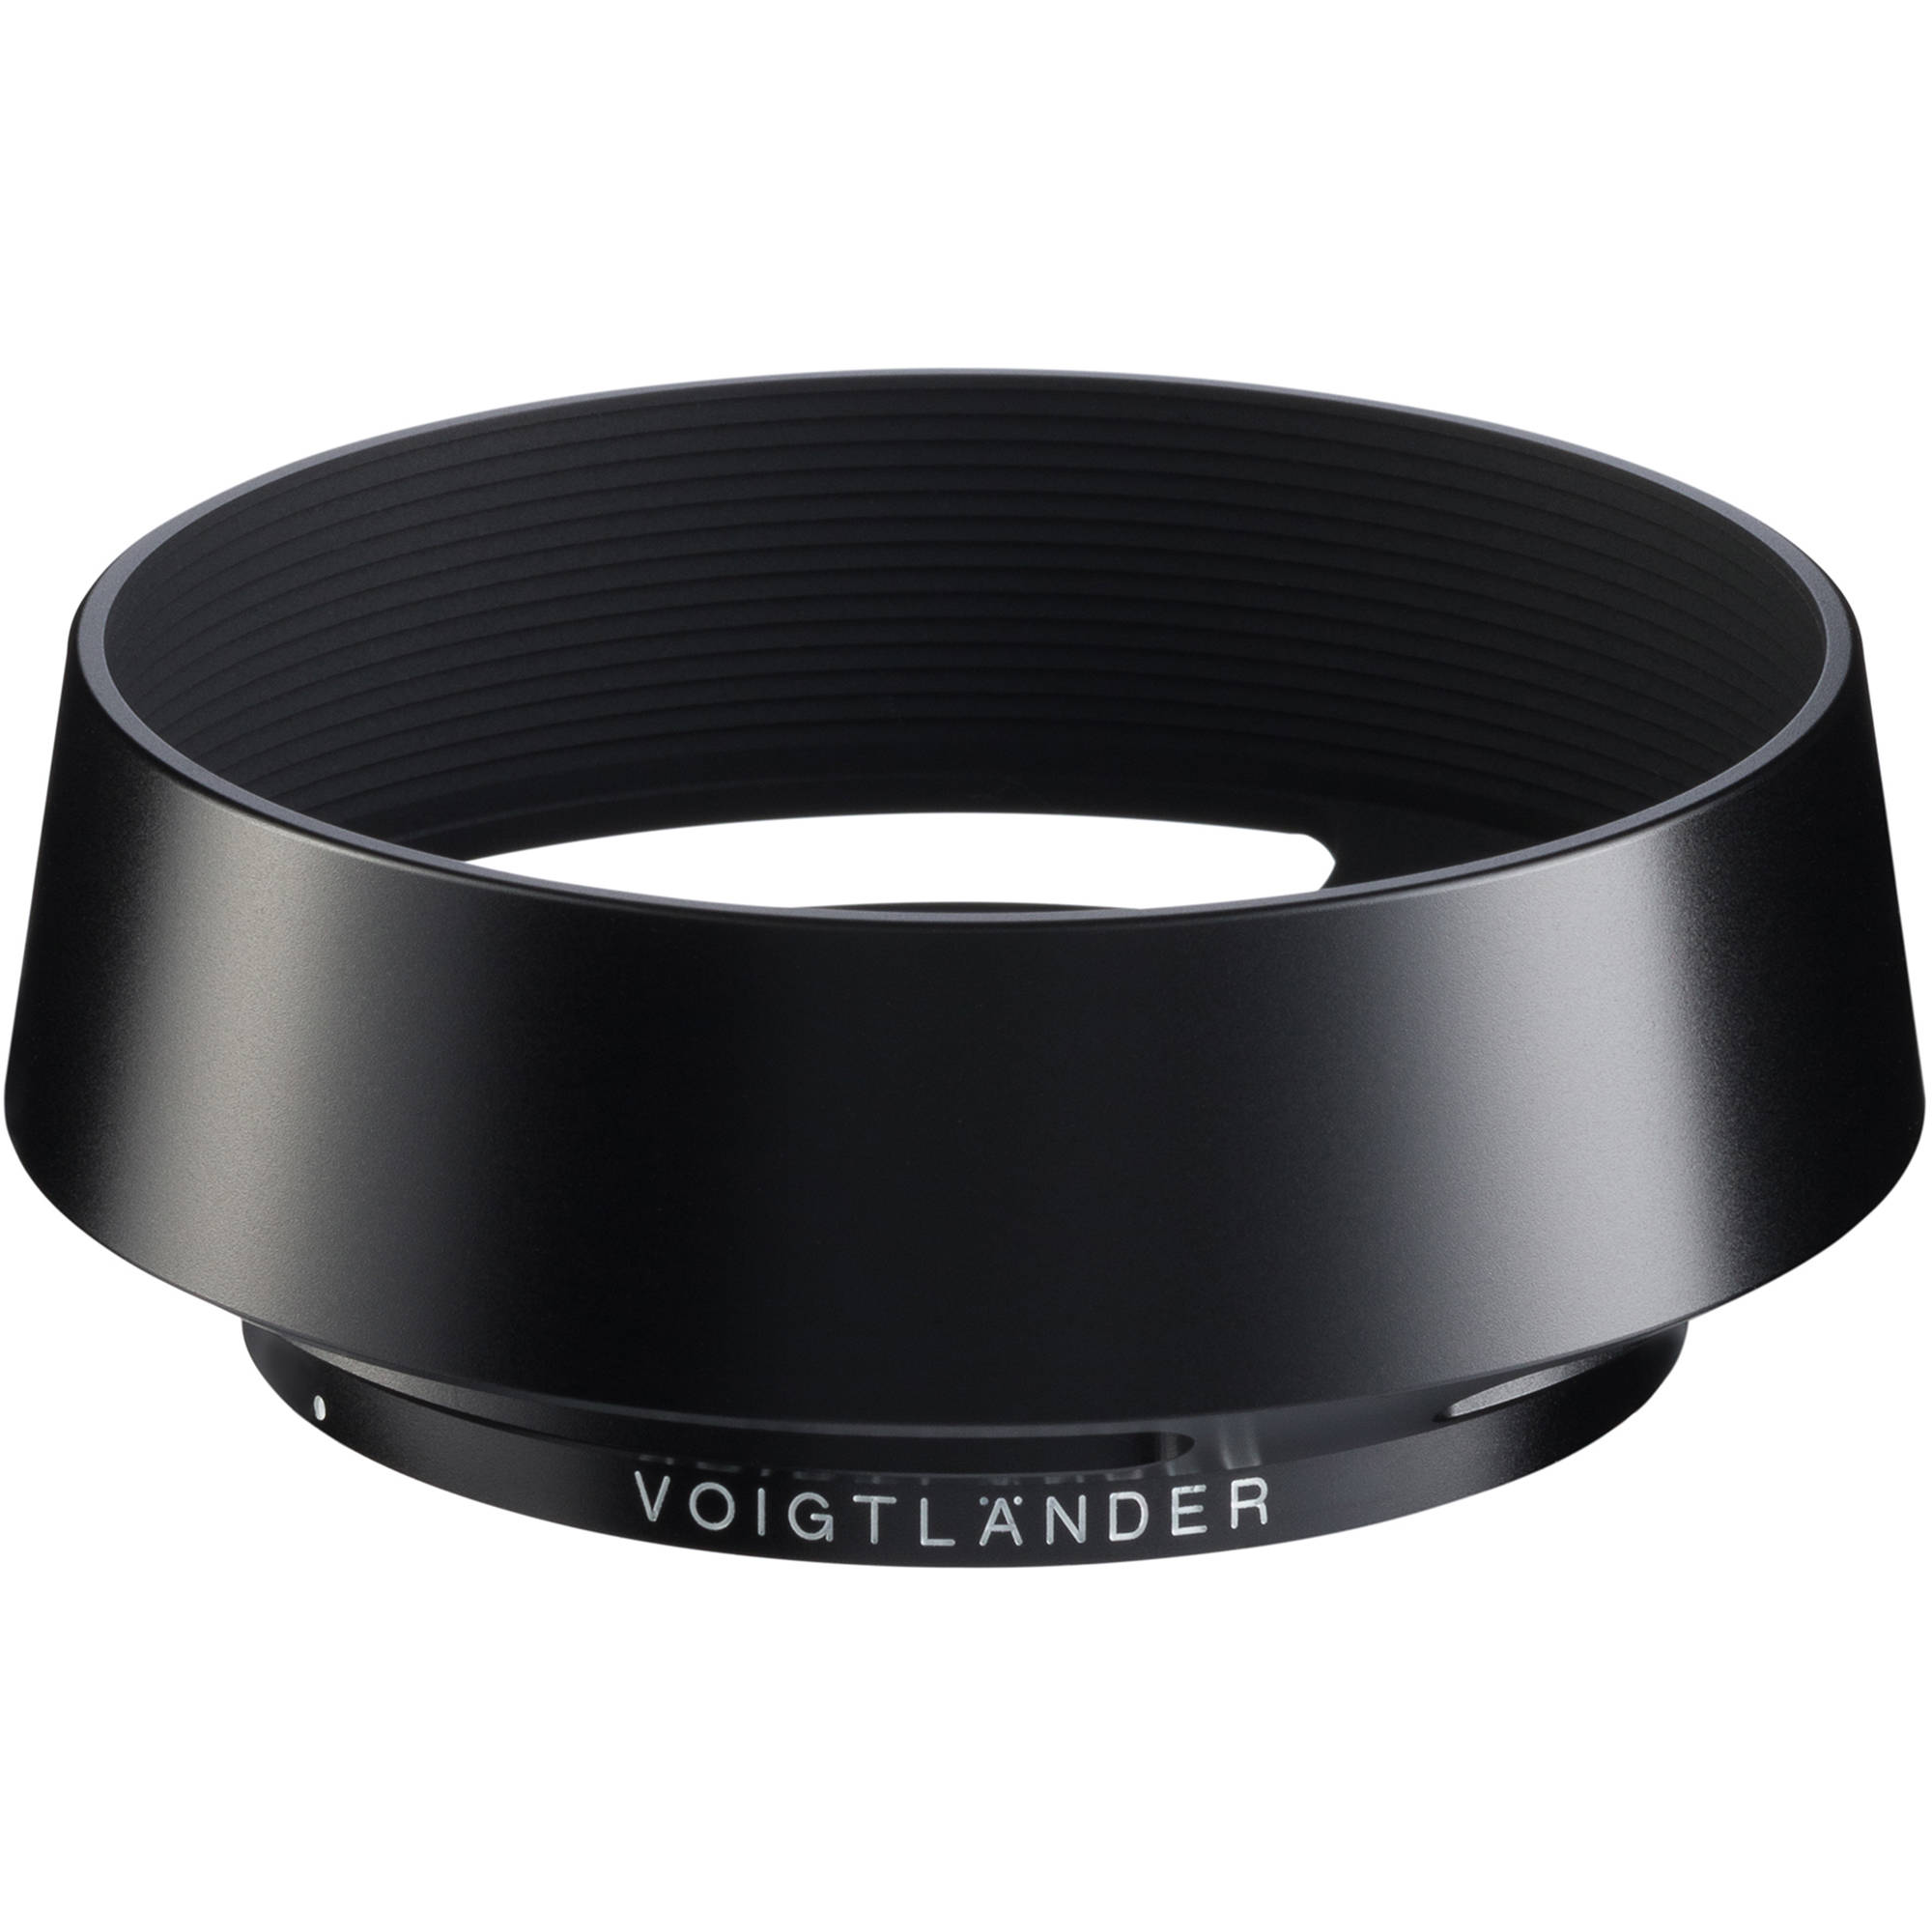 TVignette pour Voigtlander LH-10